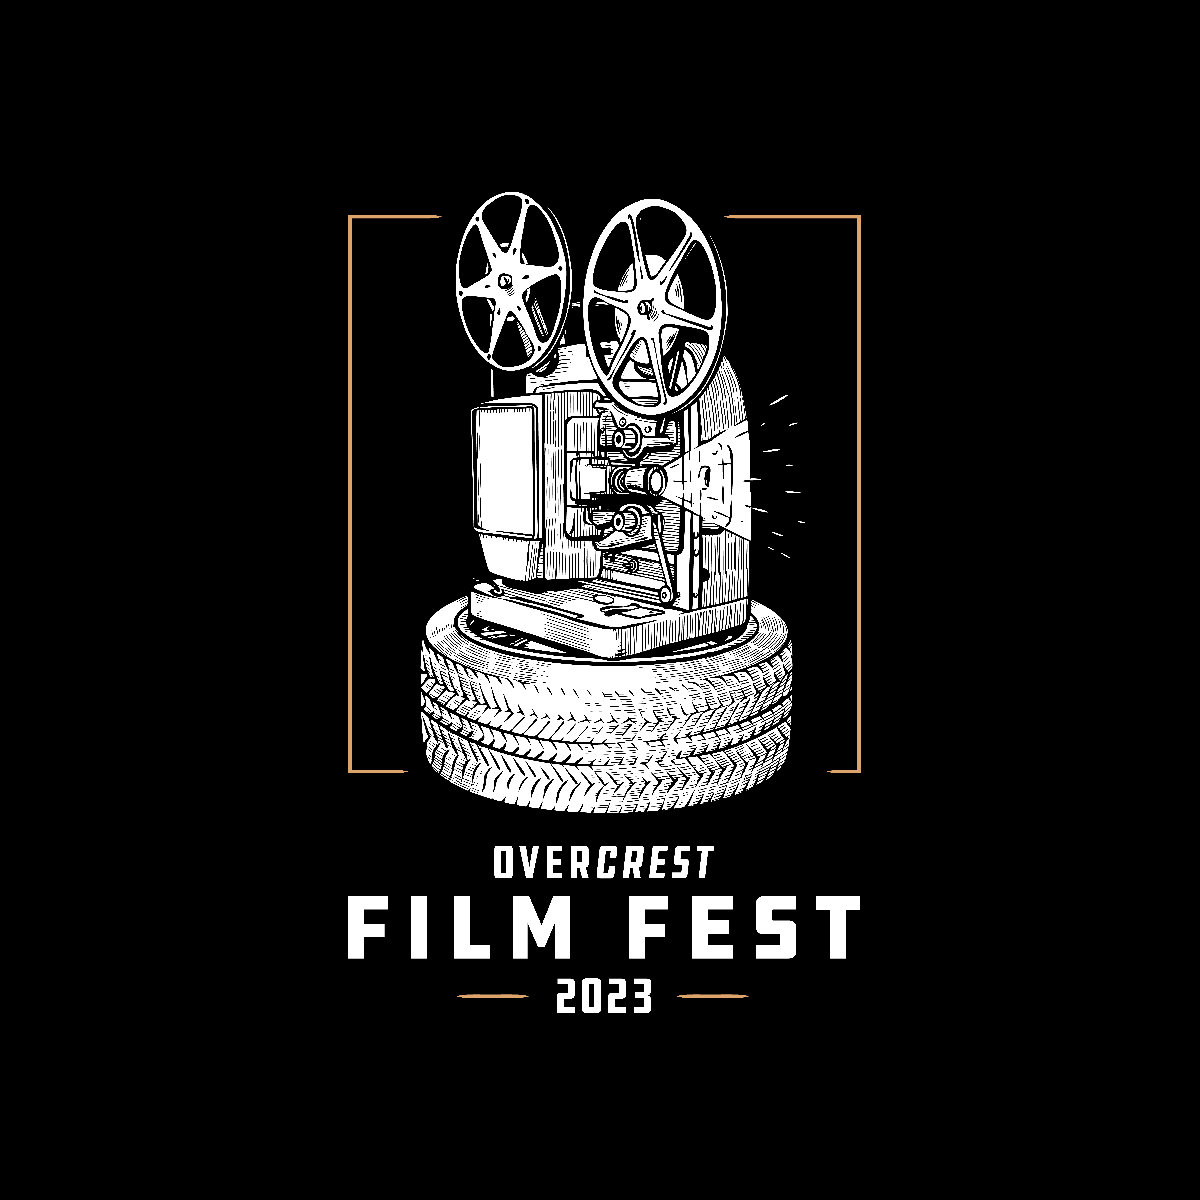 Overcrest Film Fest 2023